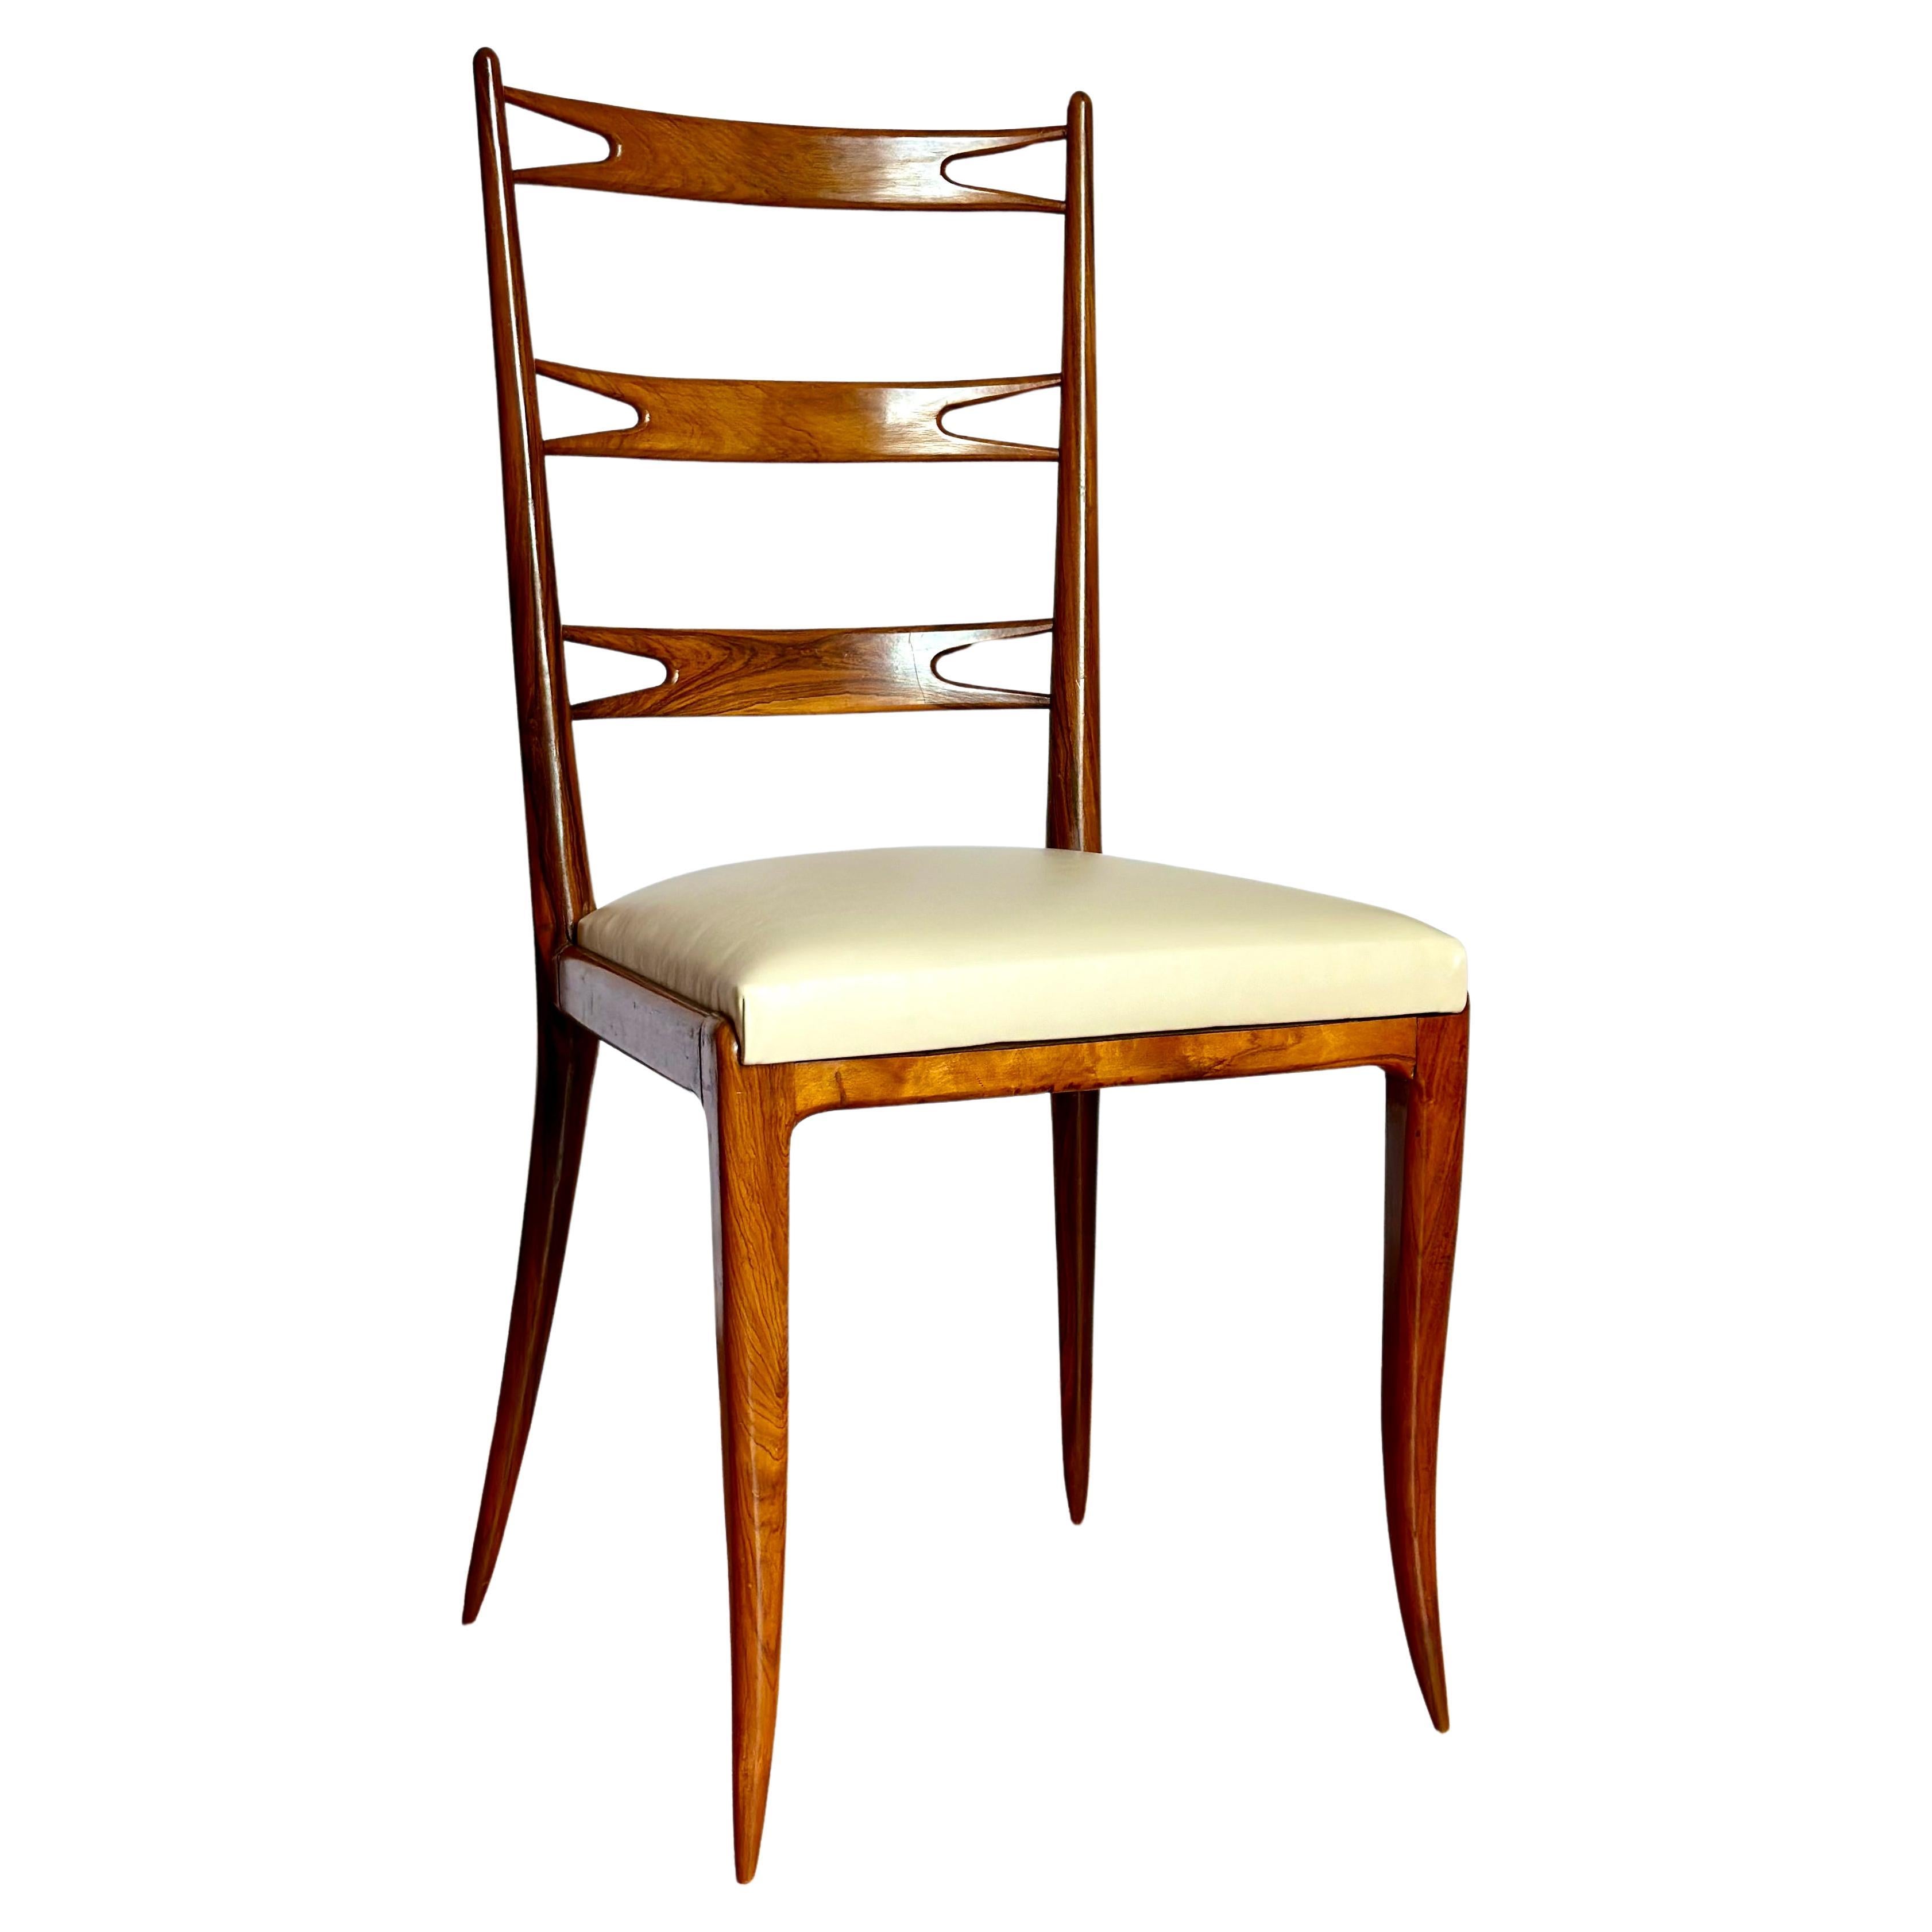 Giuseppe Scapinelli, chaise moderne brésilienne en bois de rose Caviuna et cuir